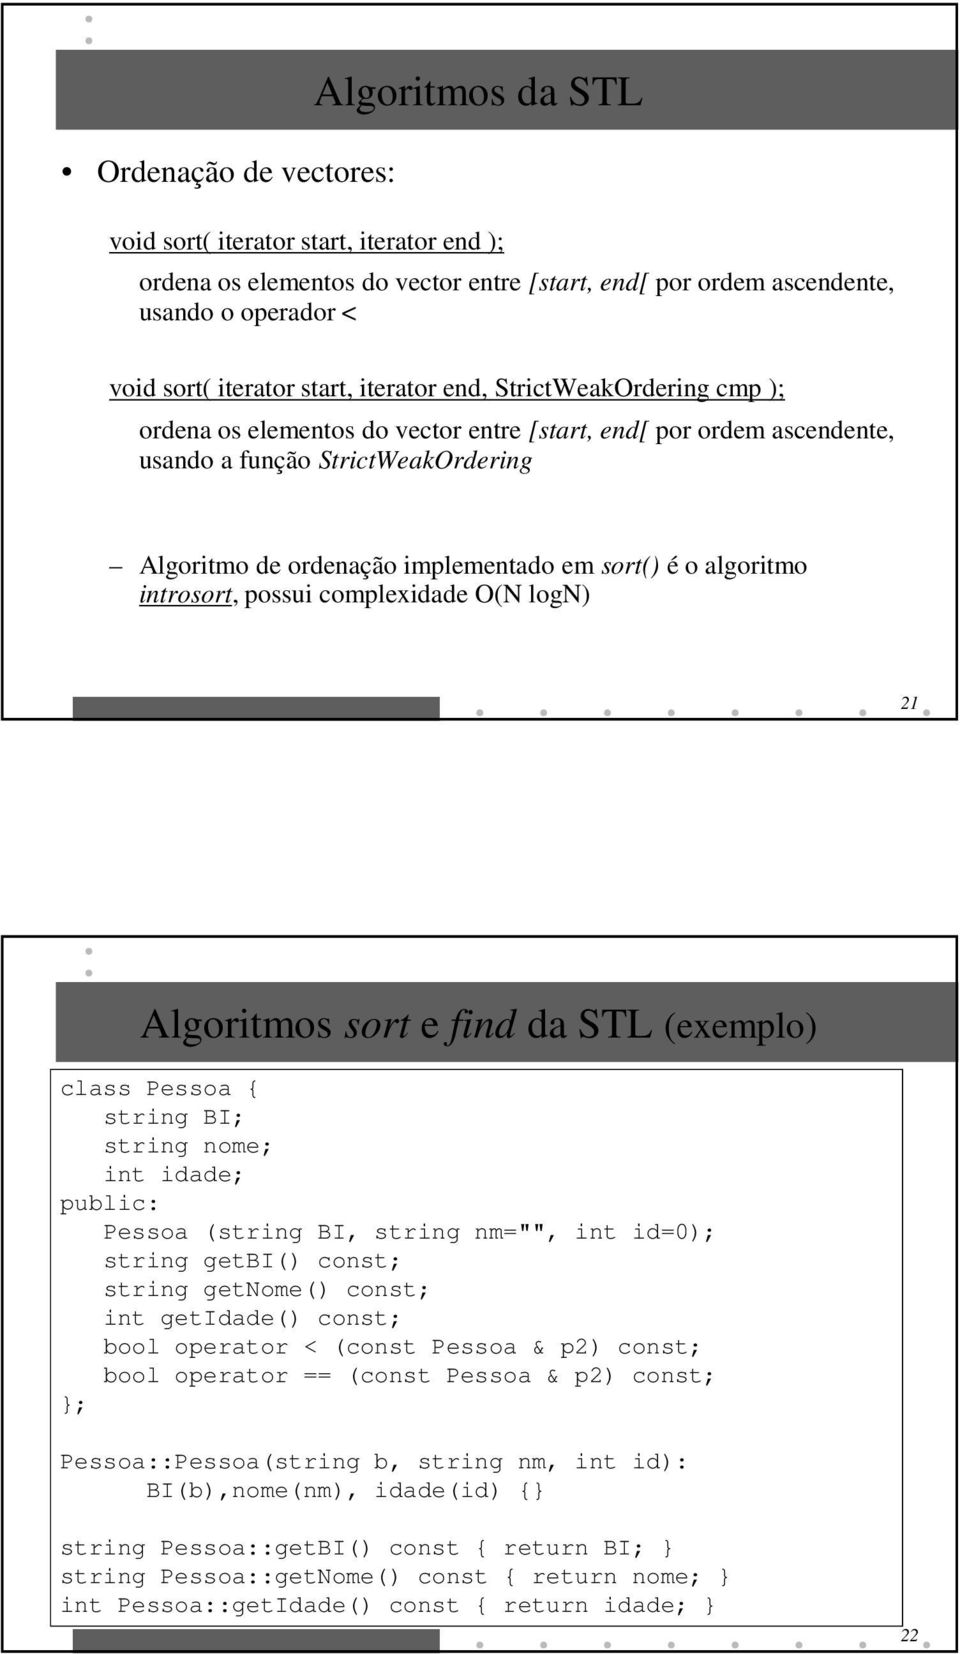 é o algoritmo introsort, possui complexidade O(N logn) 21 Algoritmos sort e find da STL (exemplo) class Pessoa string BI; string nome; int idade; public: Pessoa (string BI, string nm="", int id=0);